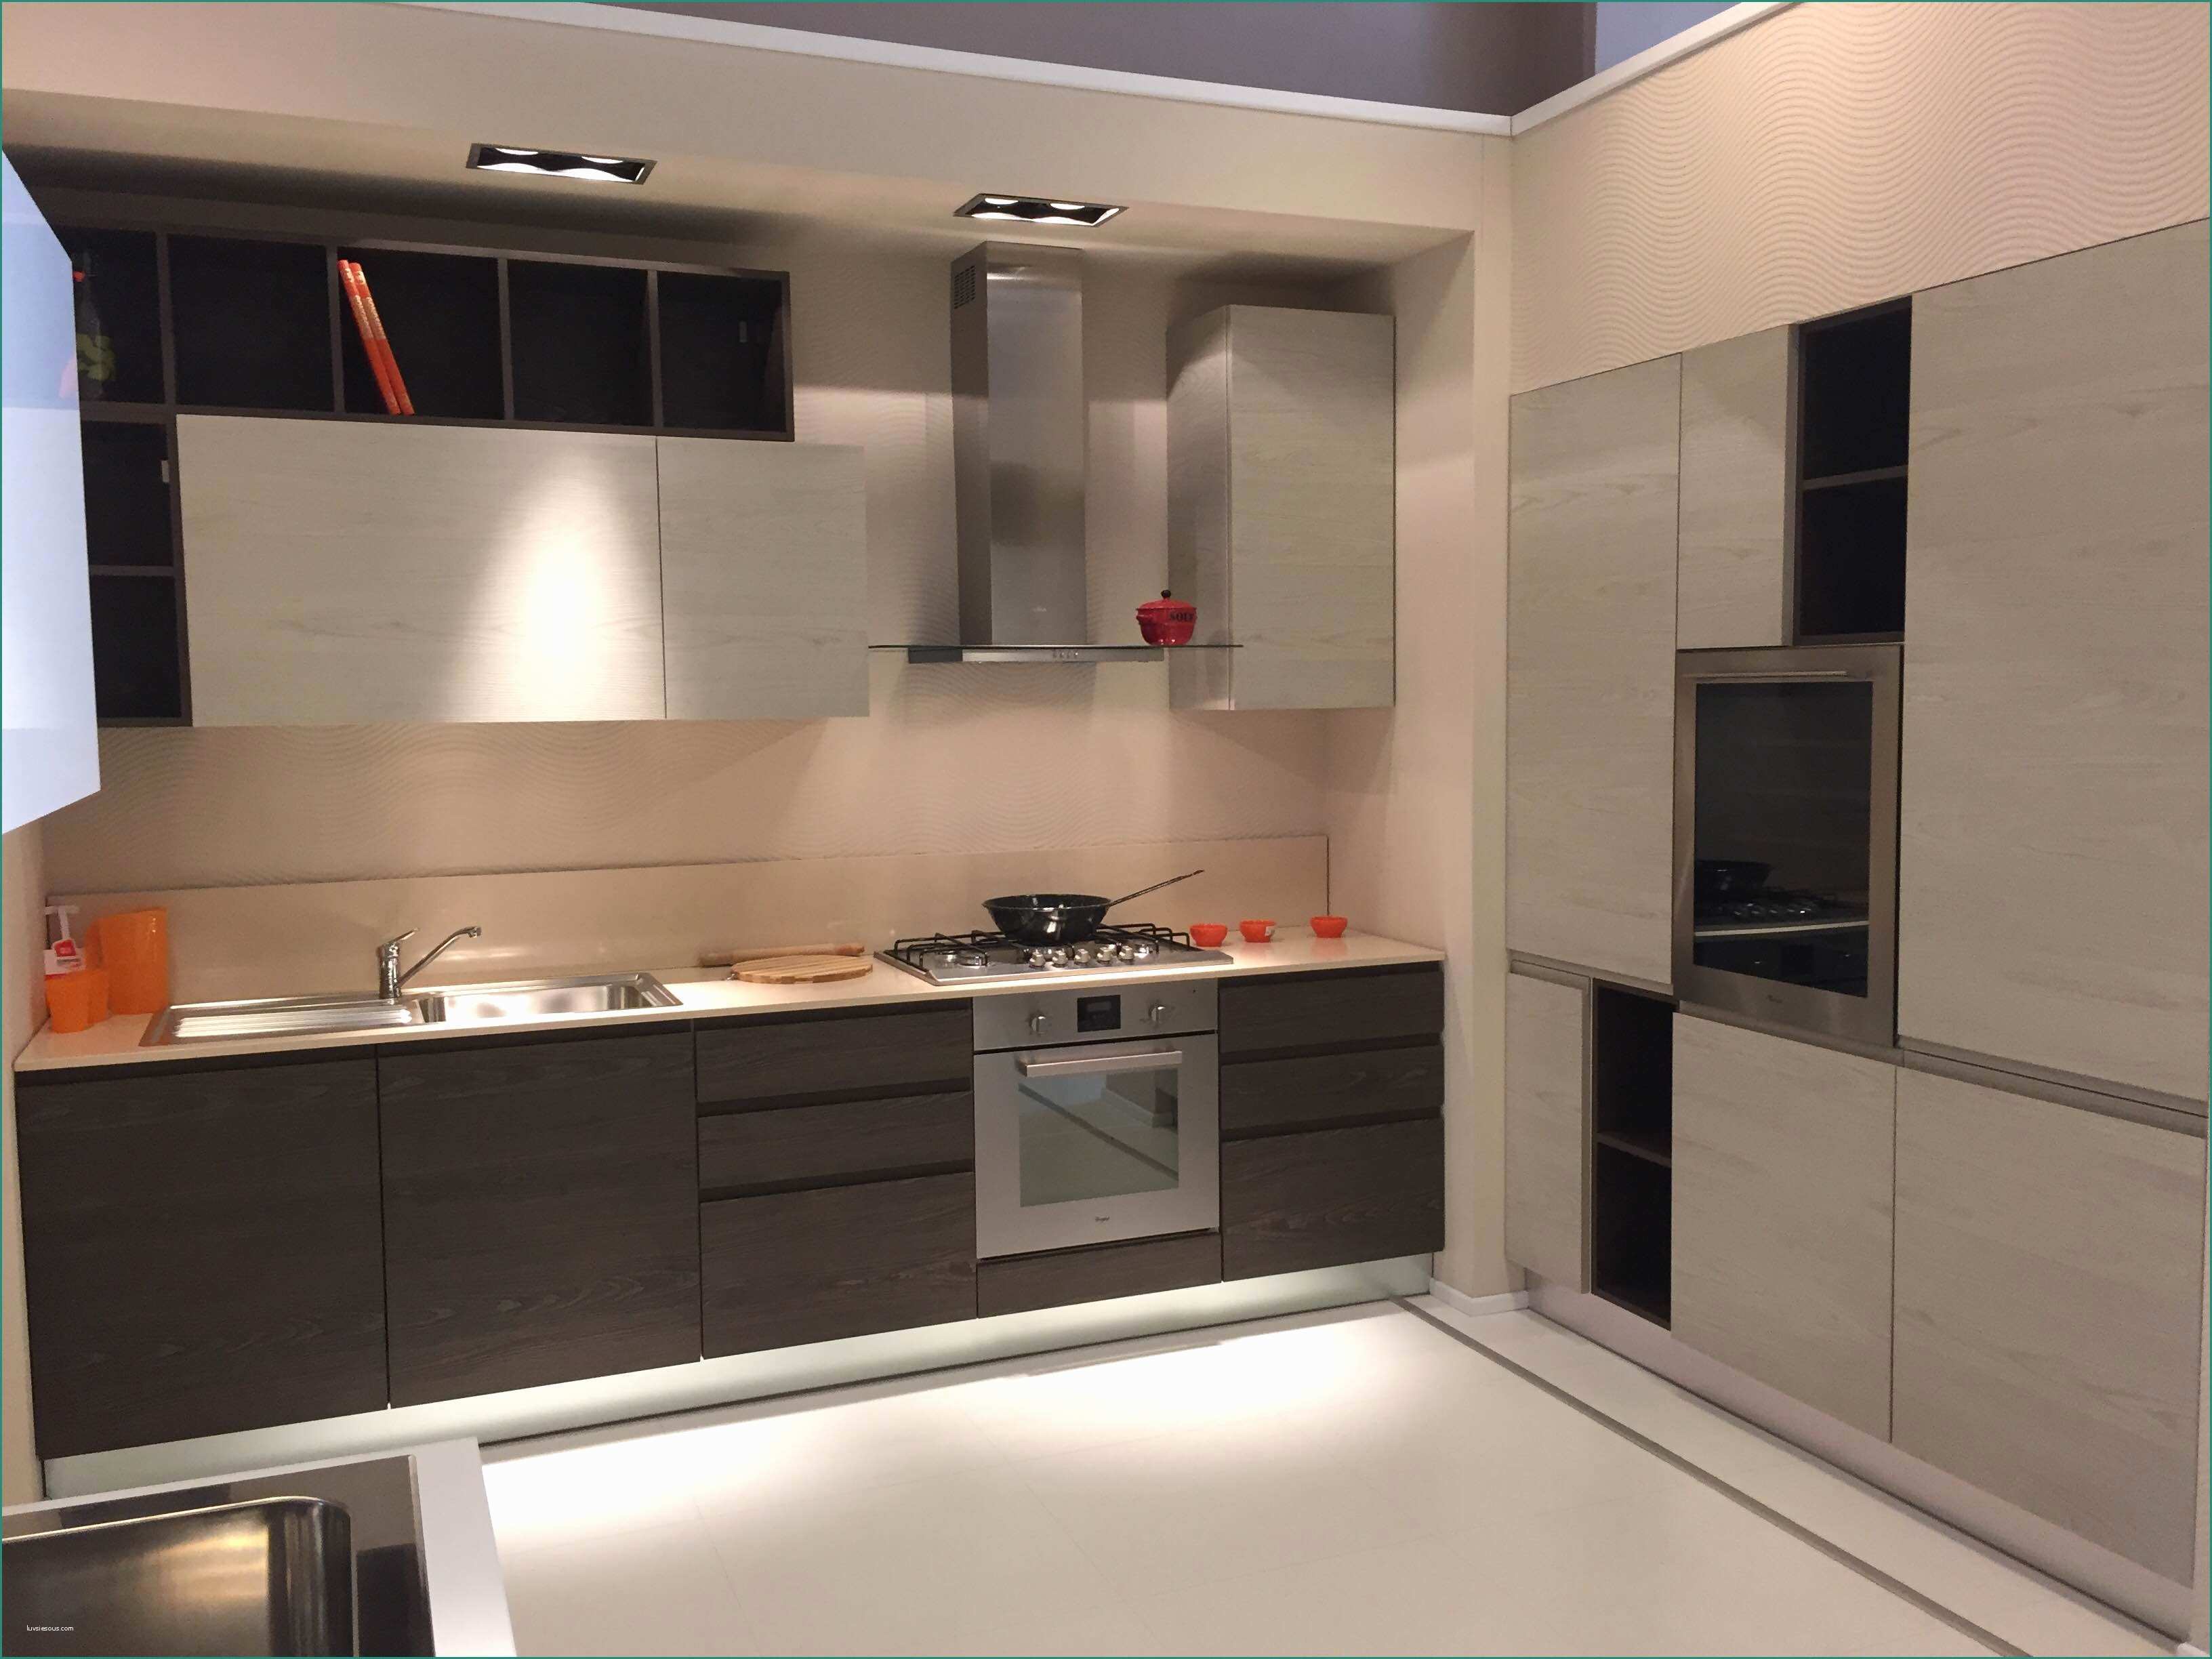 Cucine Berloni Moderne E Cucine Arrex Qualit Idee Di Design Per La Casa Rustify